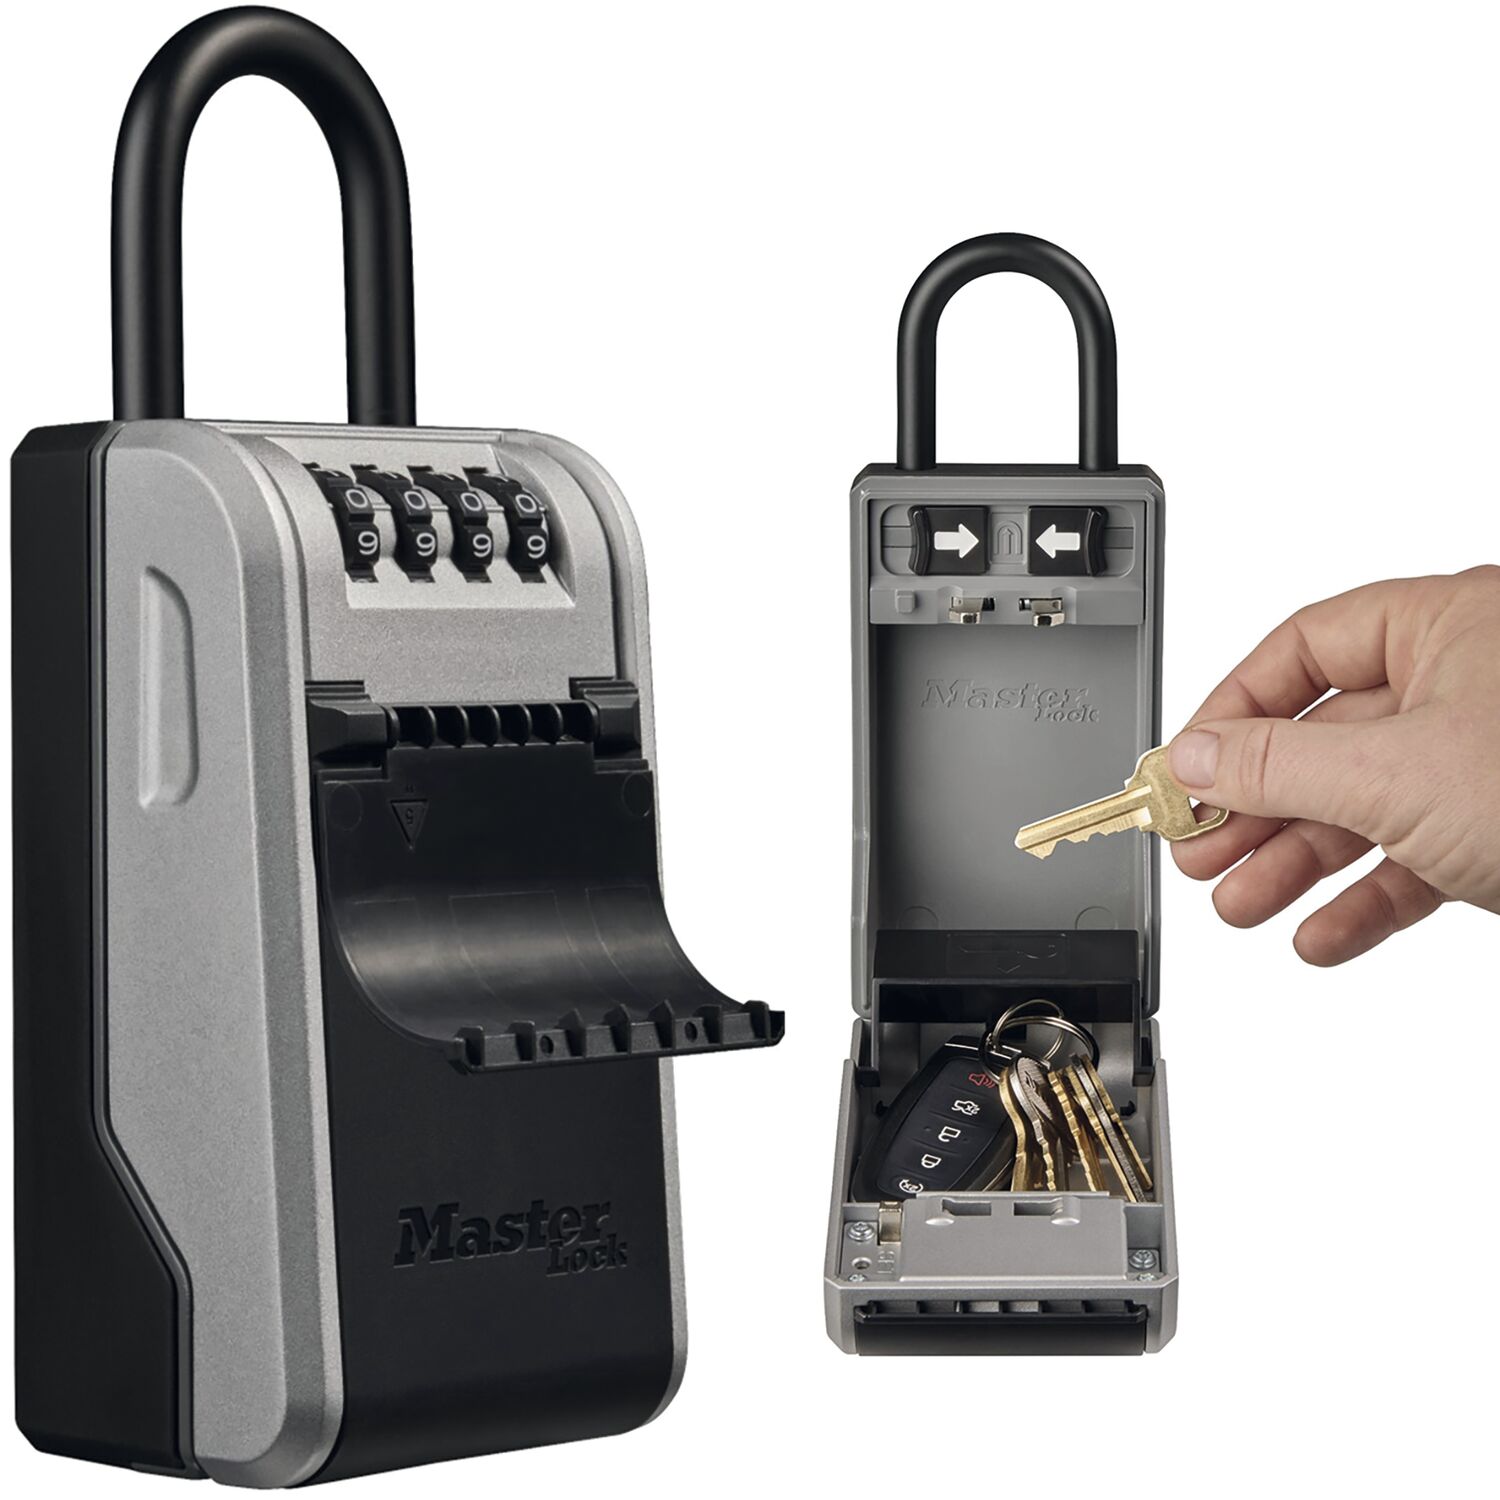 MASTER LOCK Schlüsselsafe 5480 EURD mit abnehmbarem Bügel, schwarz/grau